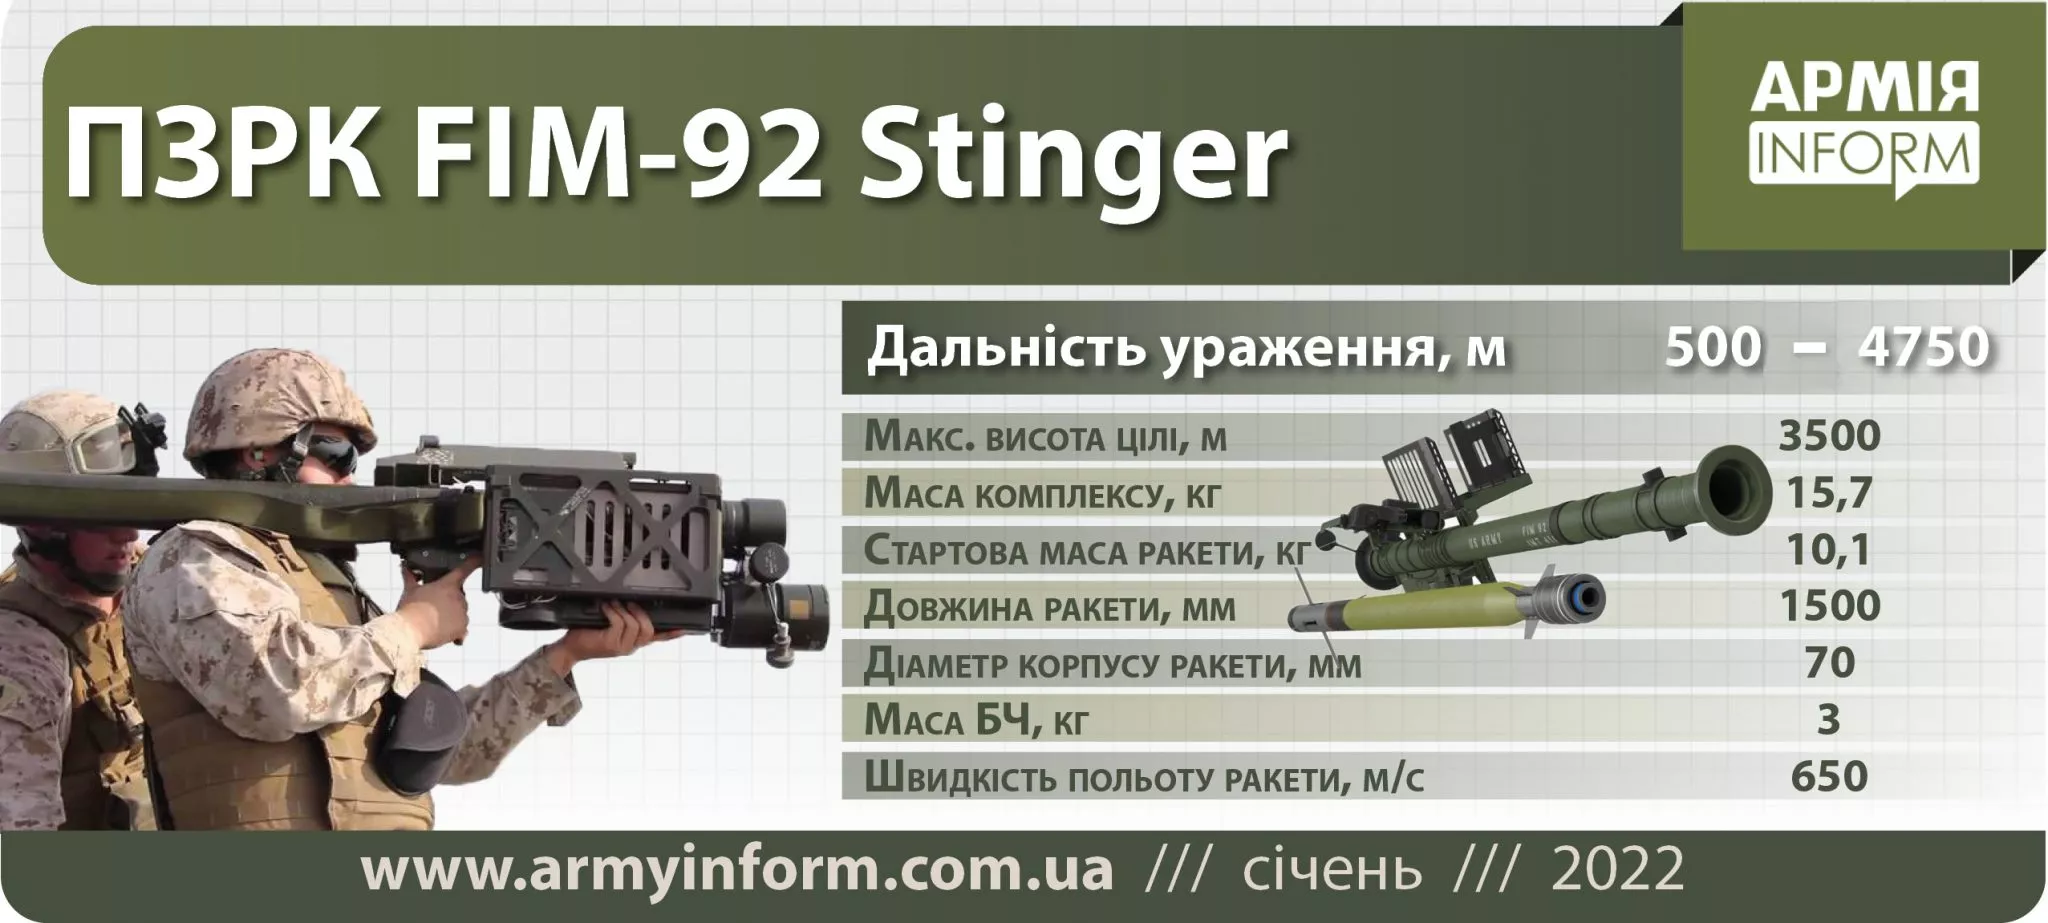 Характеристики "Стингера". Инфографика armyinform.com.ua